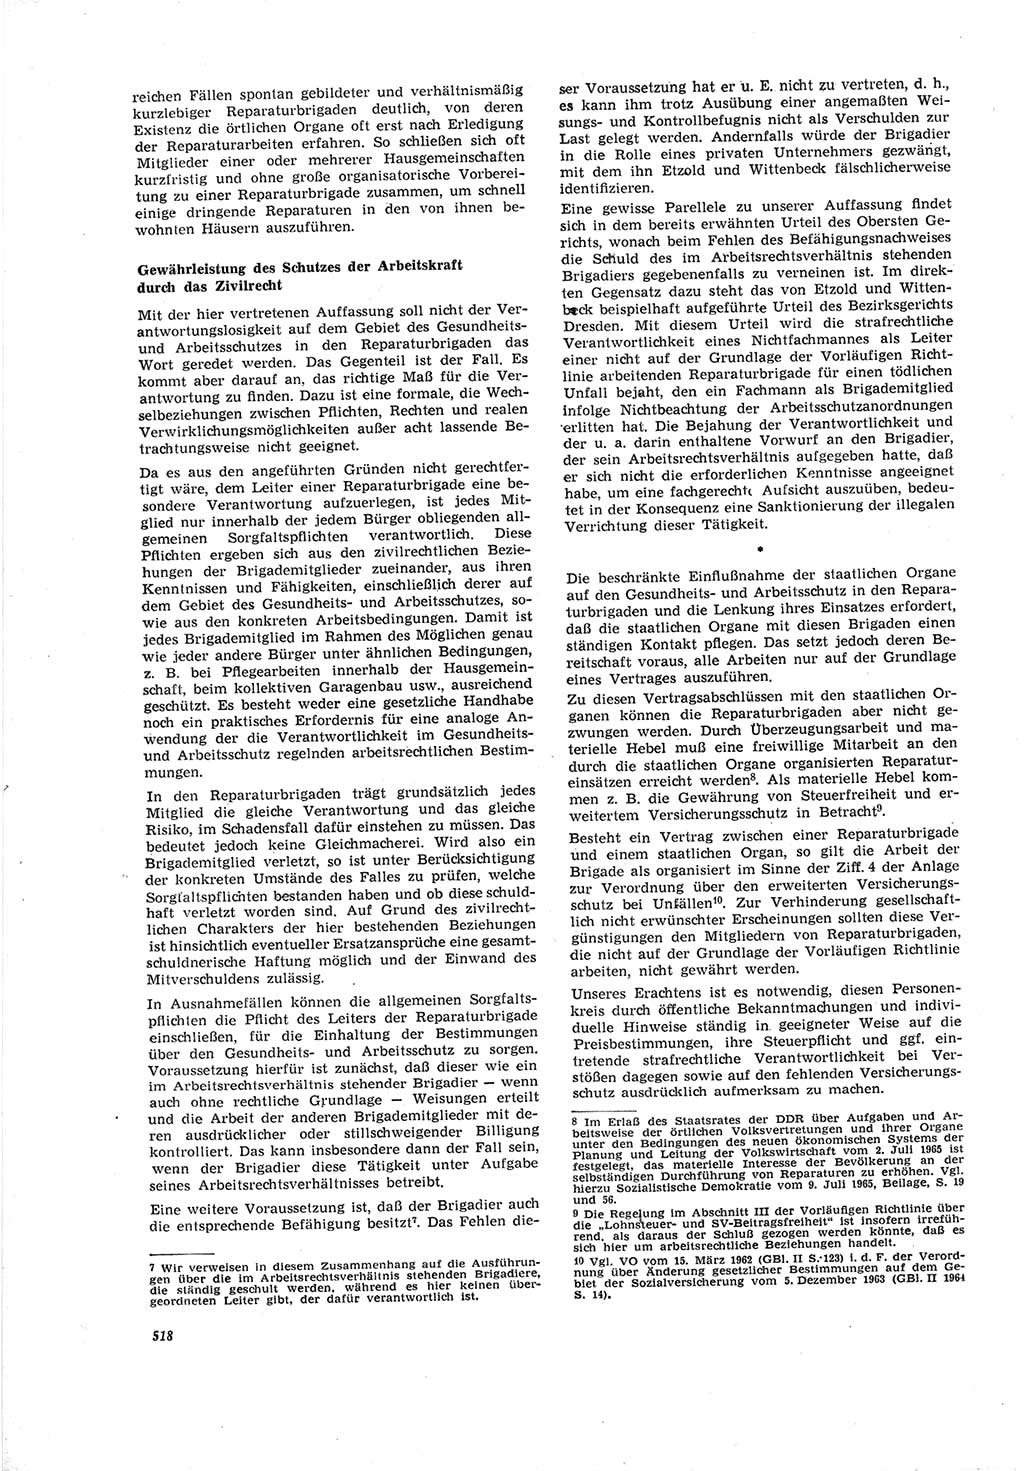 Neue Justiz (NJ), Zeitschrift für Recht und Rechtswissenschaft [Deutsche Demokratische Republik (DDR)], 19. Jahrgang 1965, Seite 518 (NJ DDR 1965, S. 518)